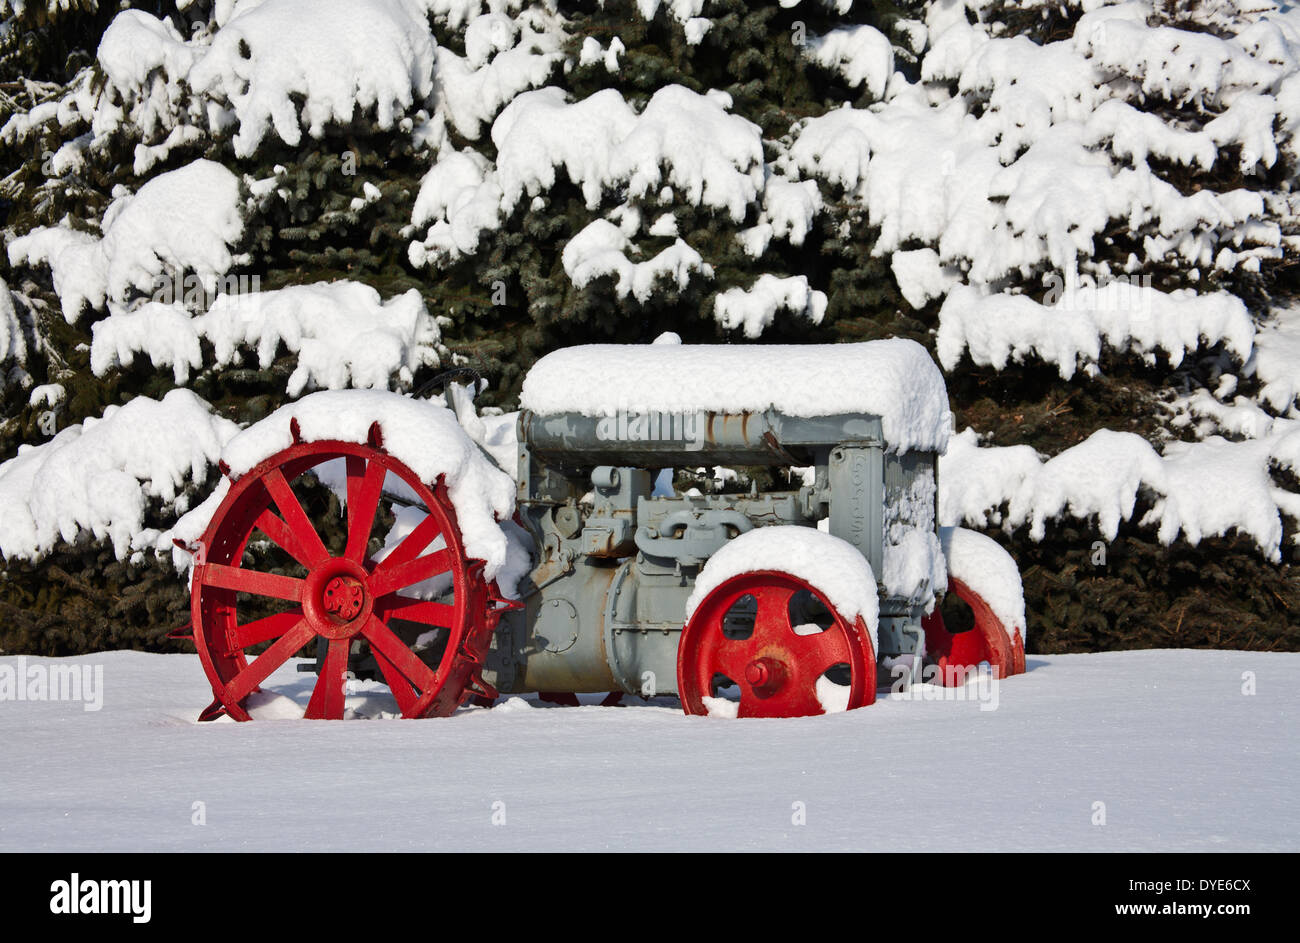 Vieux Tracteur Rouge Couvert De Neige Image stock - Image du panne, hiver:  137743825